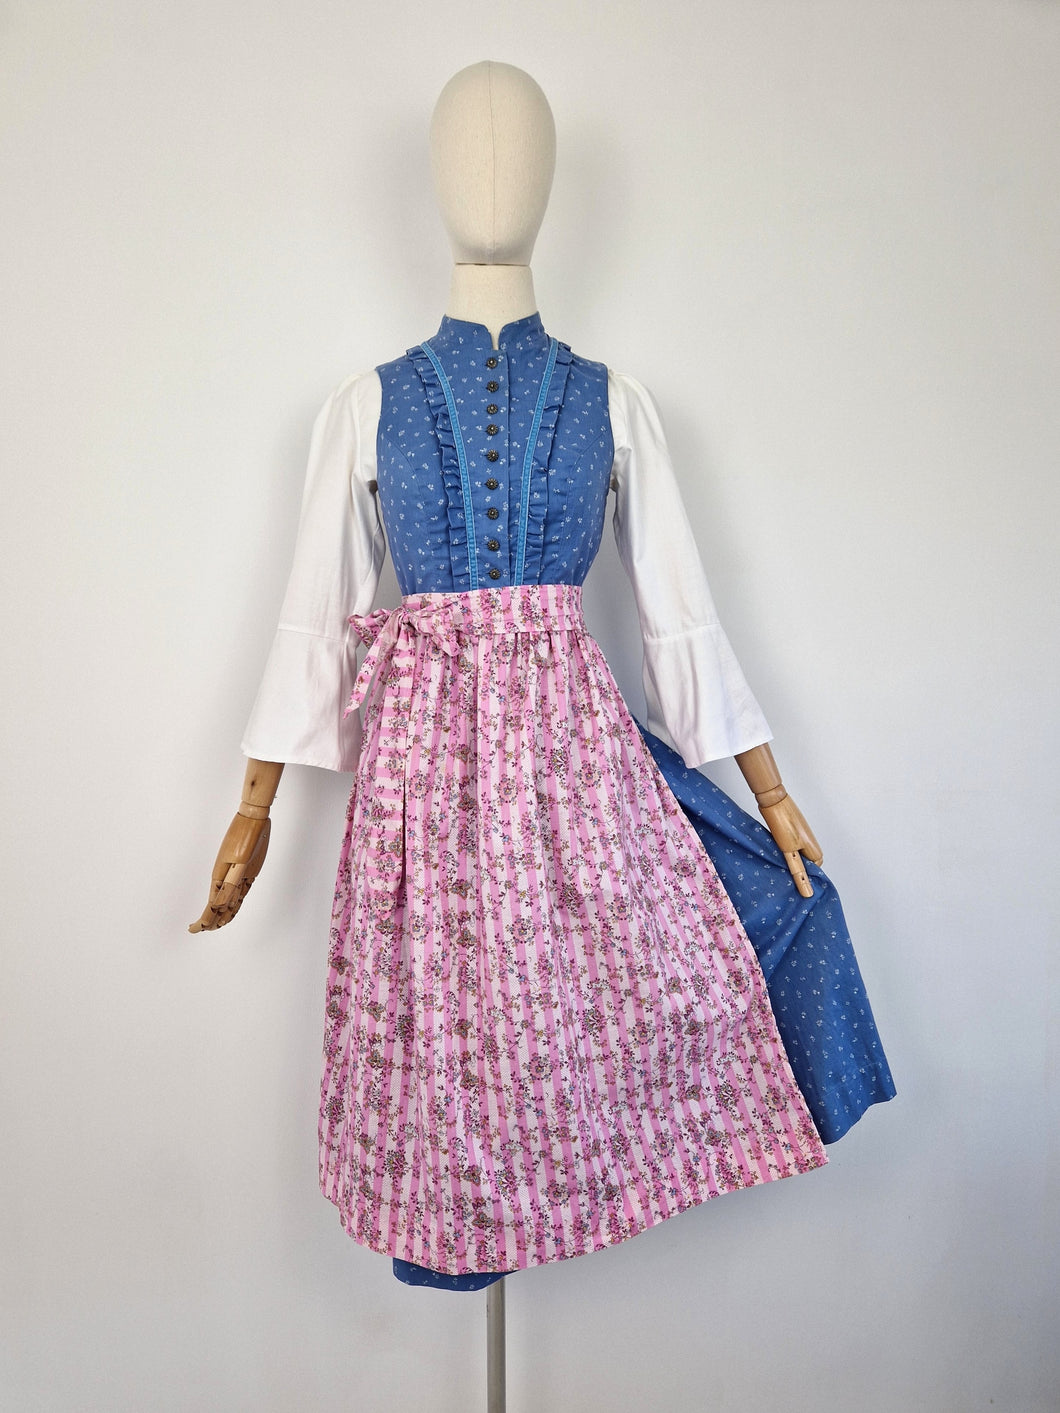 Vintage pink dirndl apron